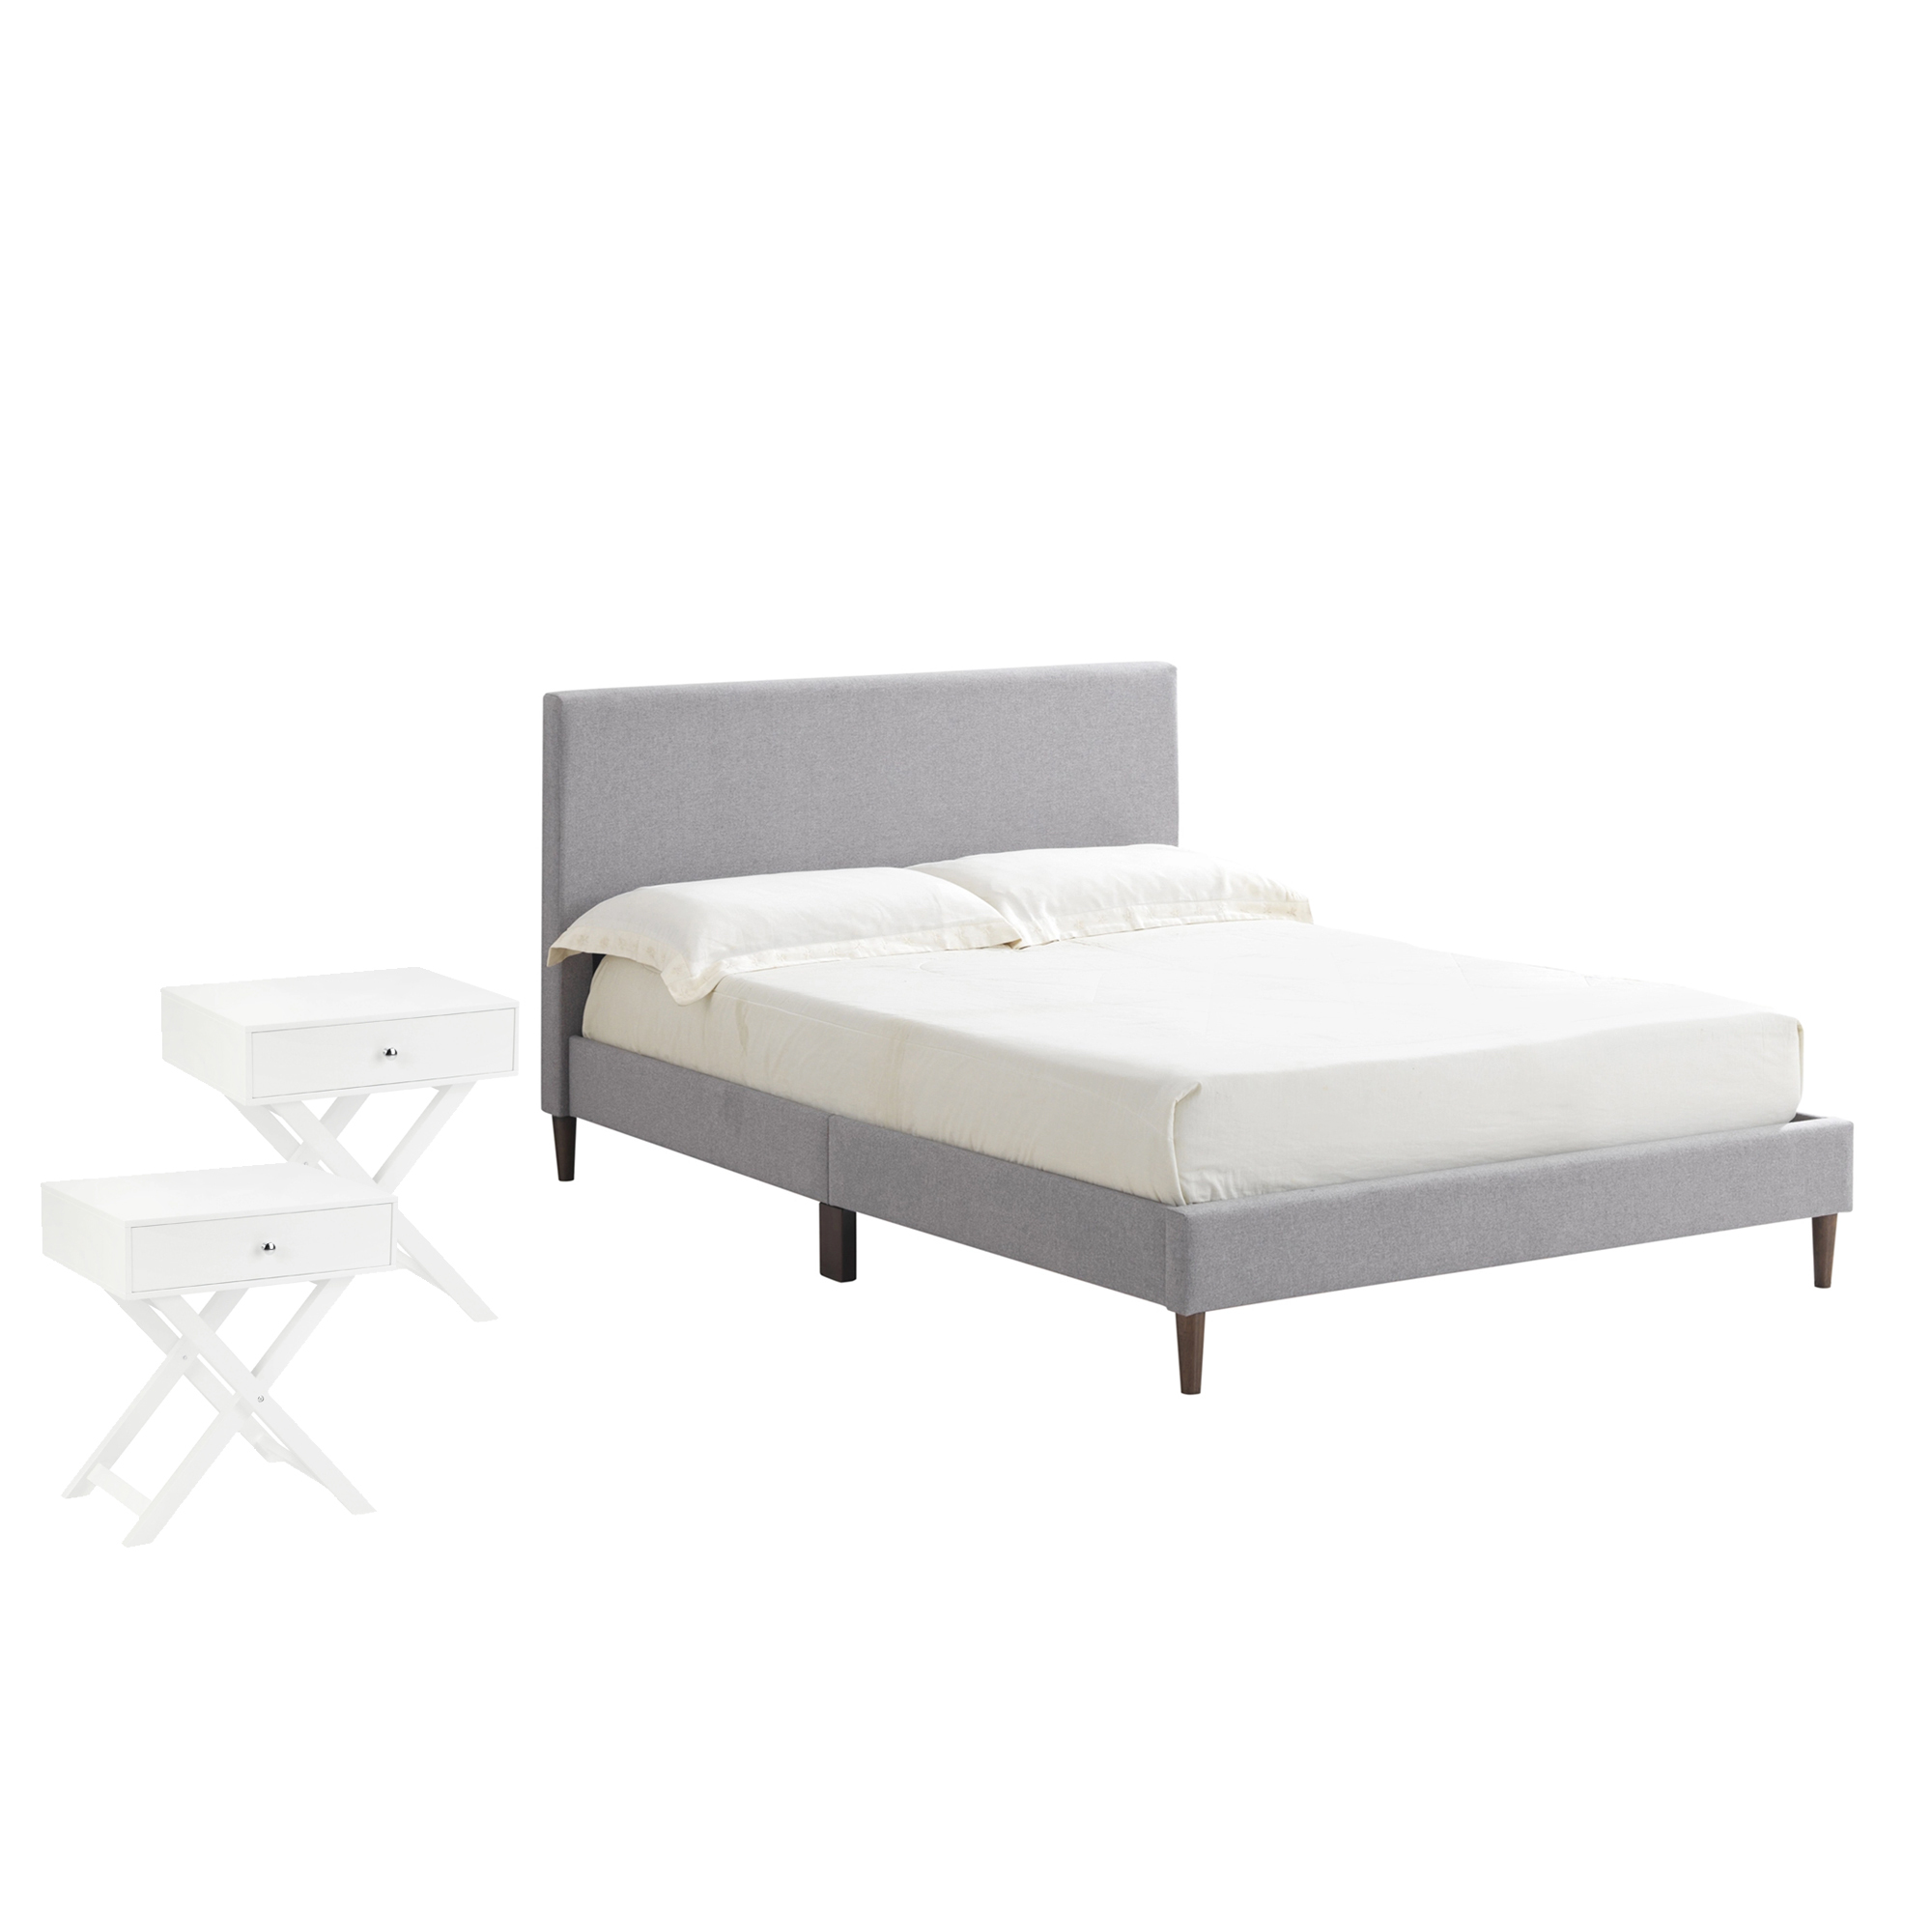 Details About New Grey Logan Bed Side Table Set Temple Webster Bedroom Sets